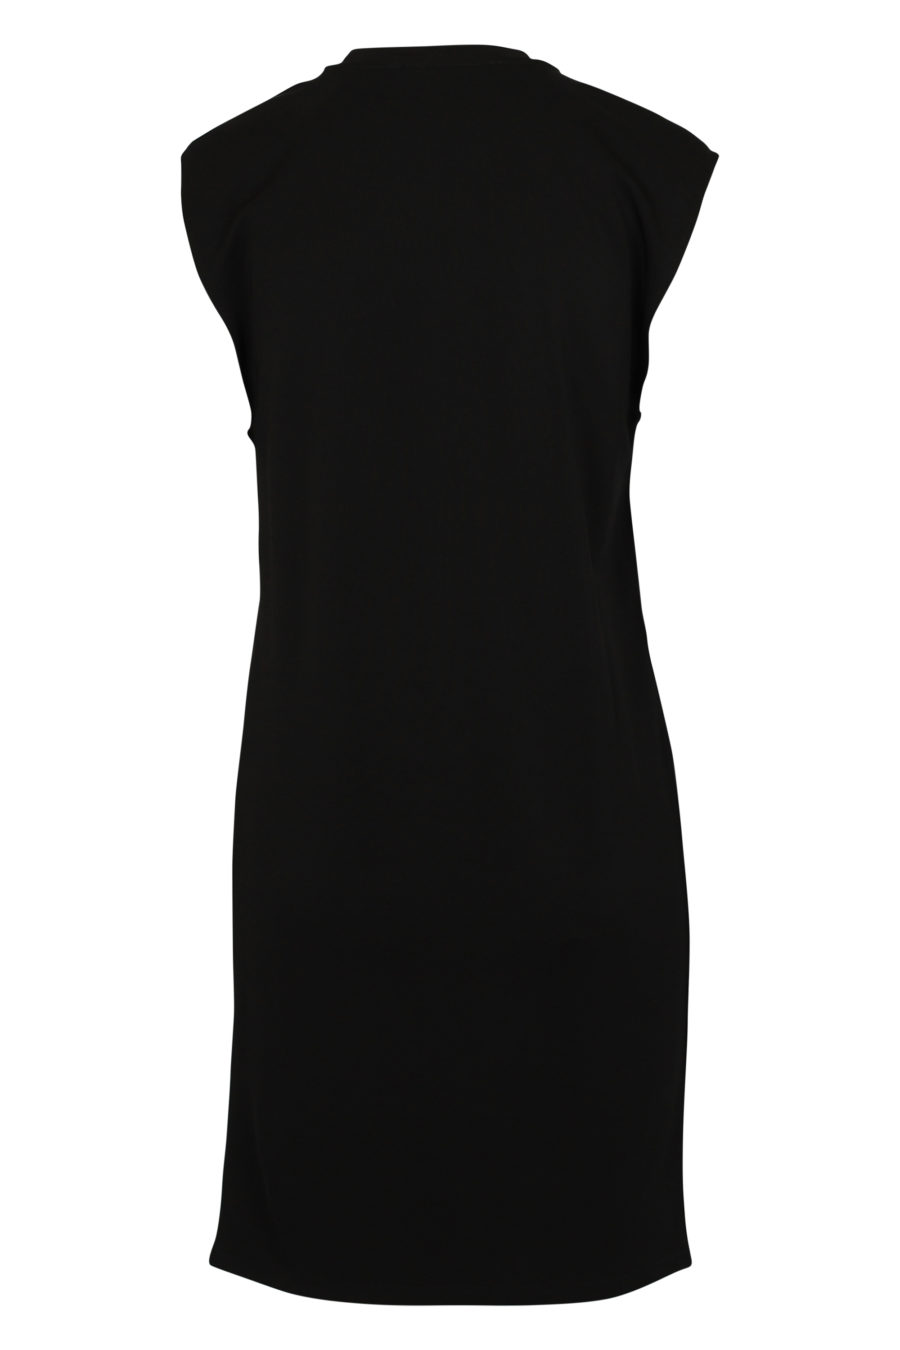 Vestido de malha preto com ombreiras - IMG 3051